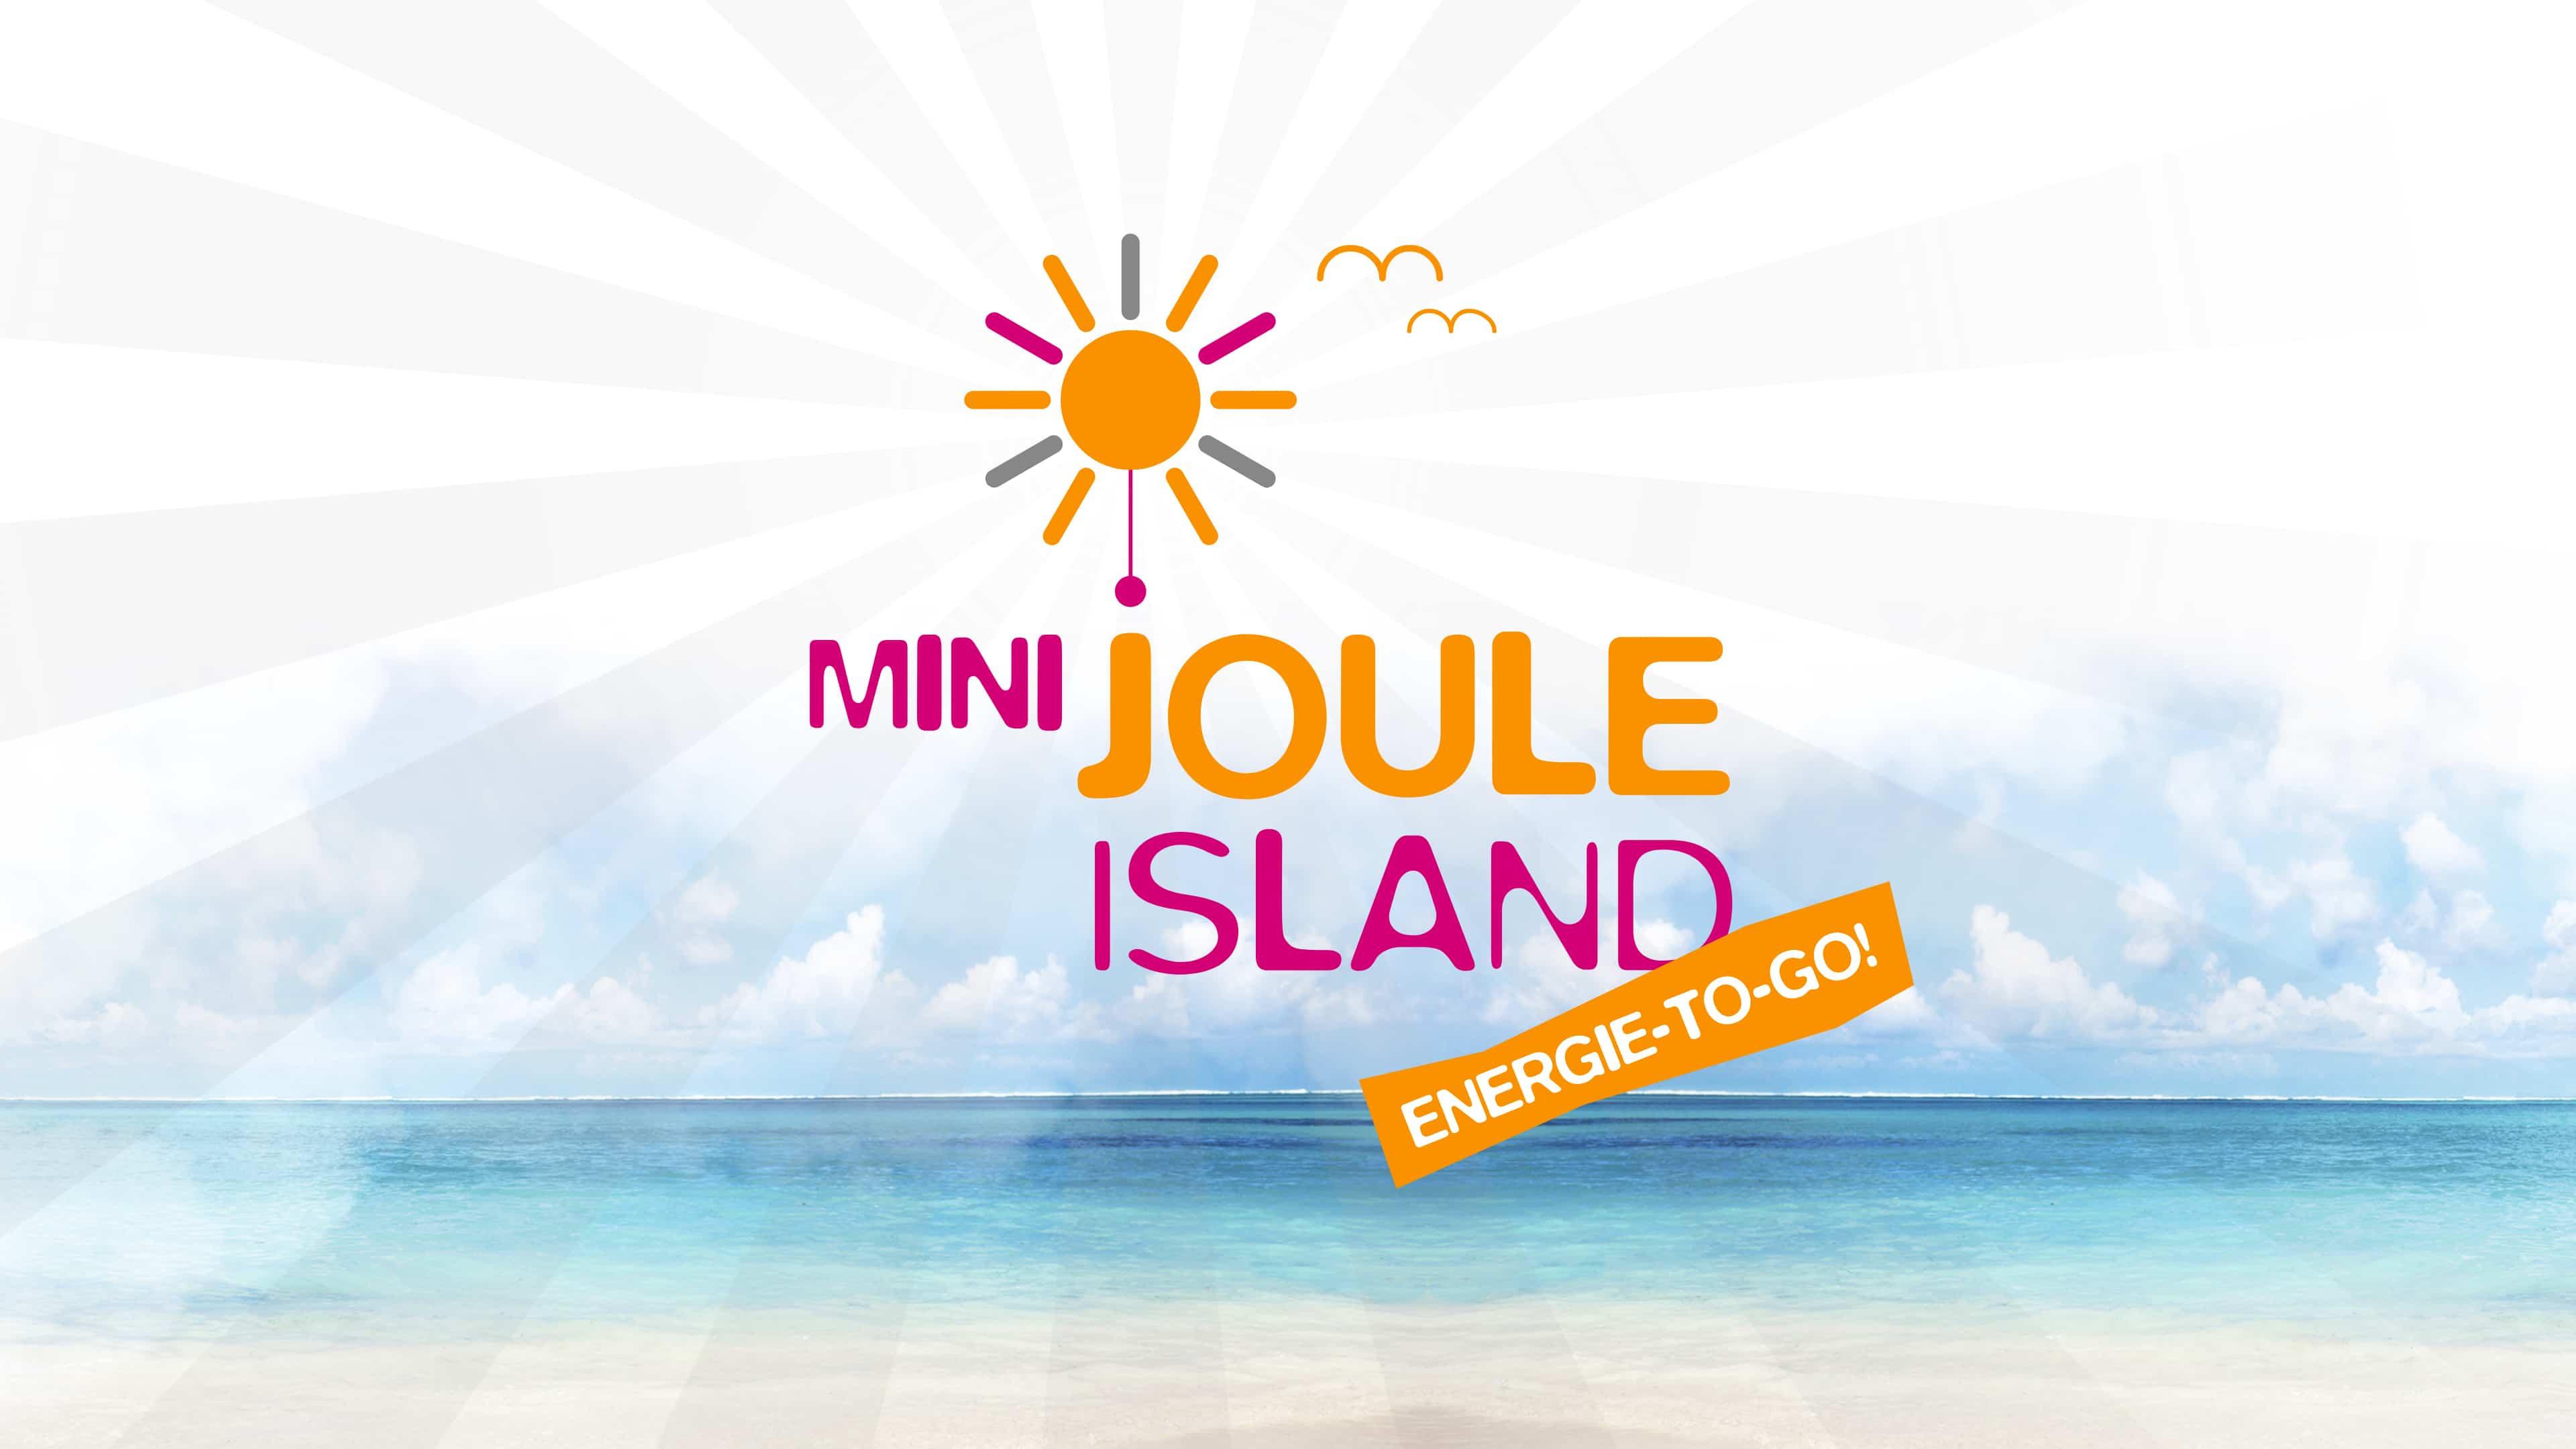 Mini Joule Island Logo in pinker Farbe